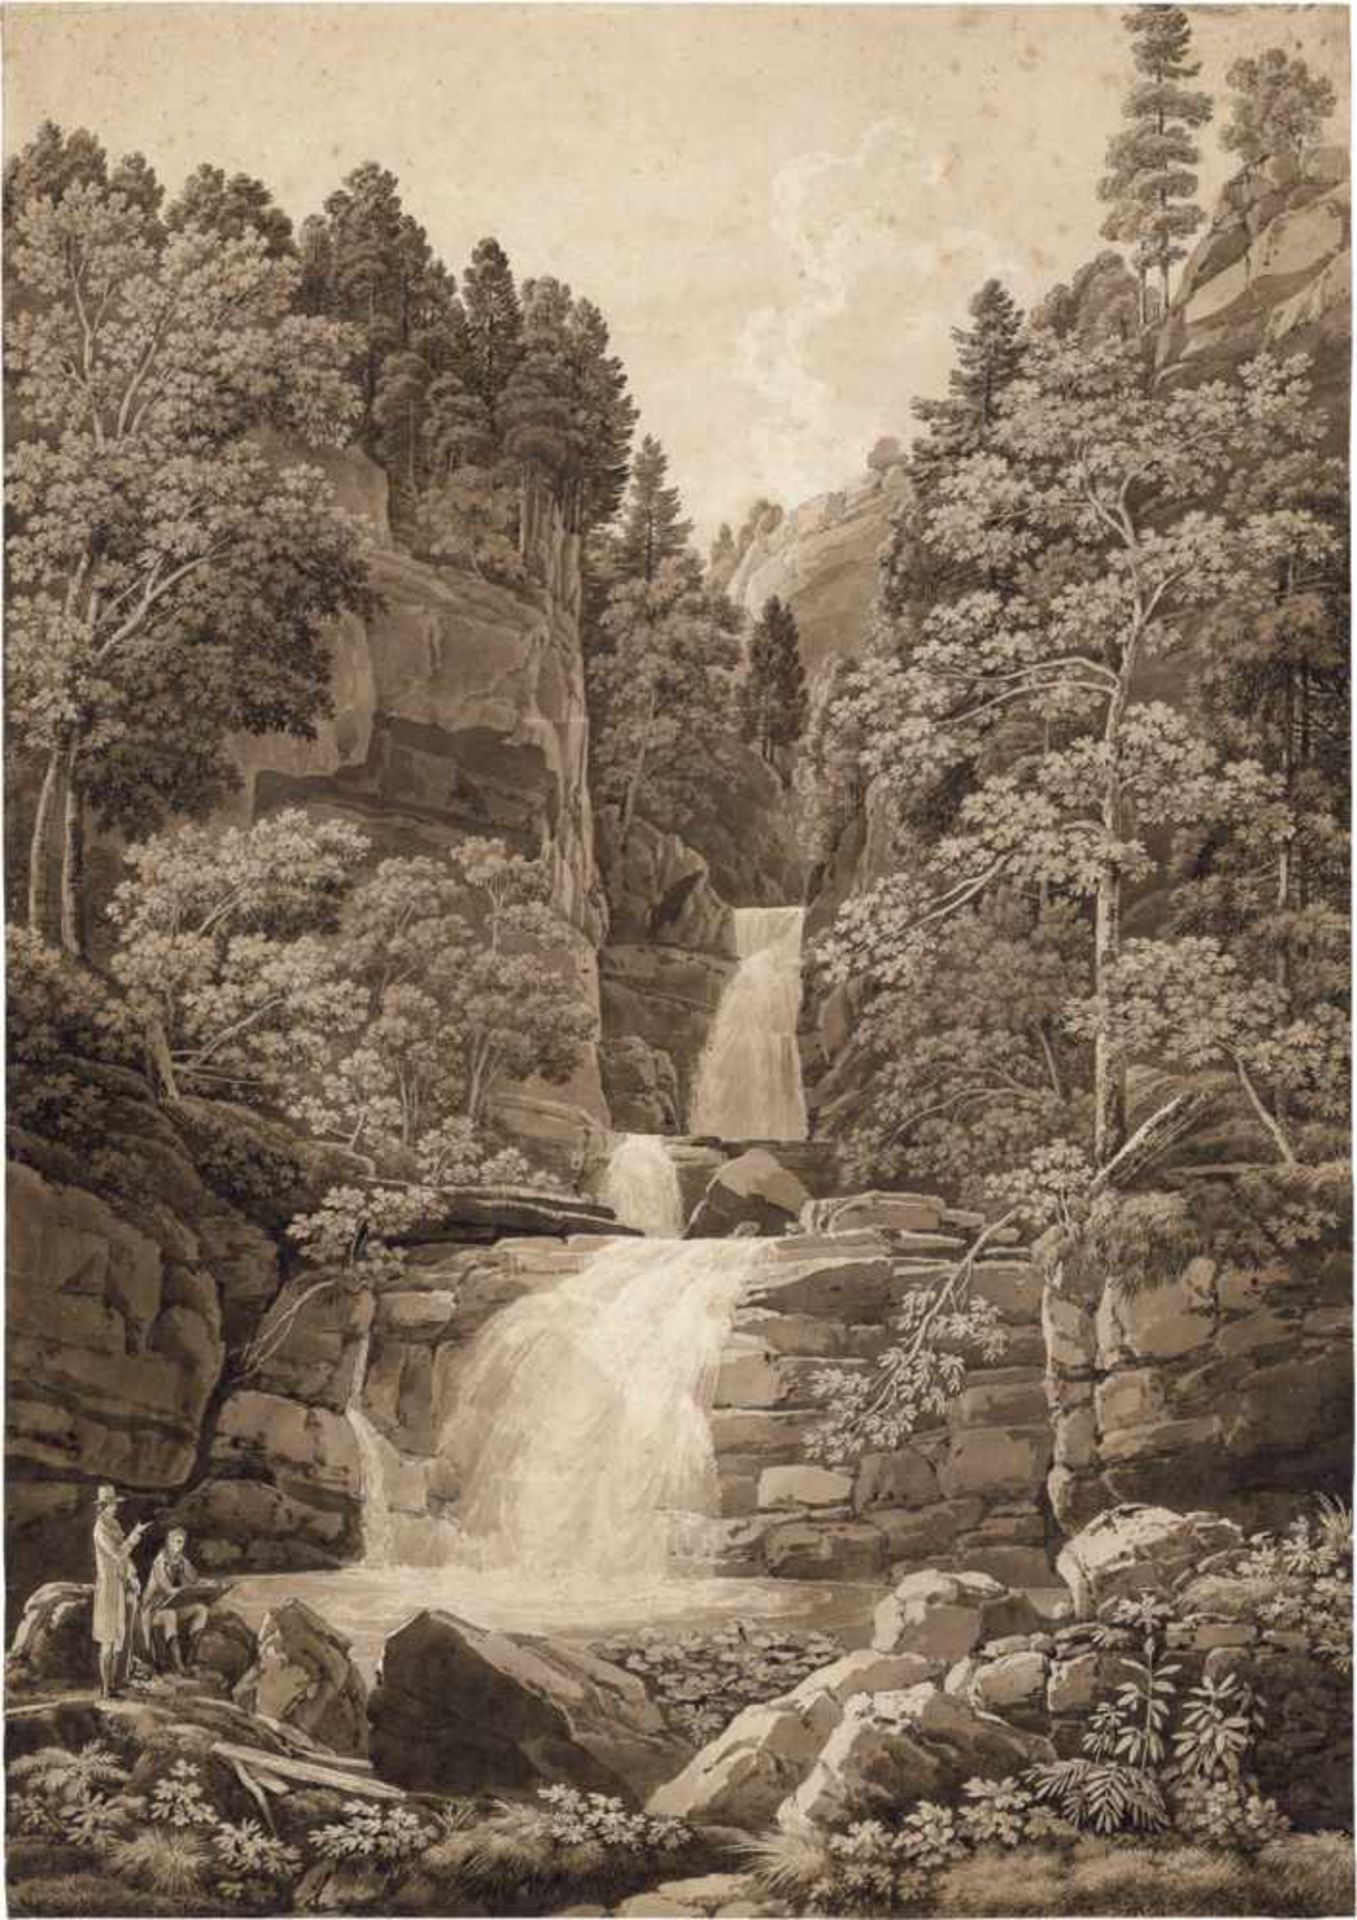 Salathé, Friedrich: Zeichner an einem Wasserfall in bewaldeter Felslandschaft[^] Zeichner an einem